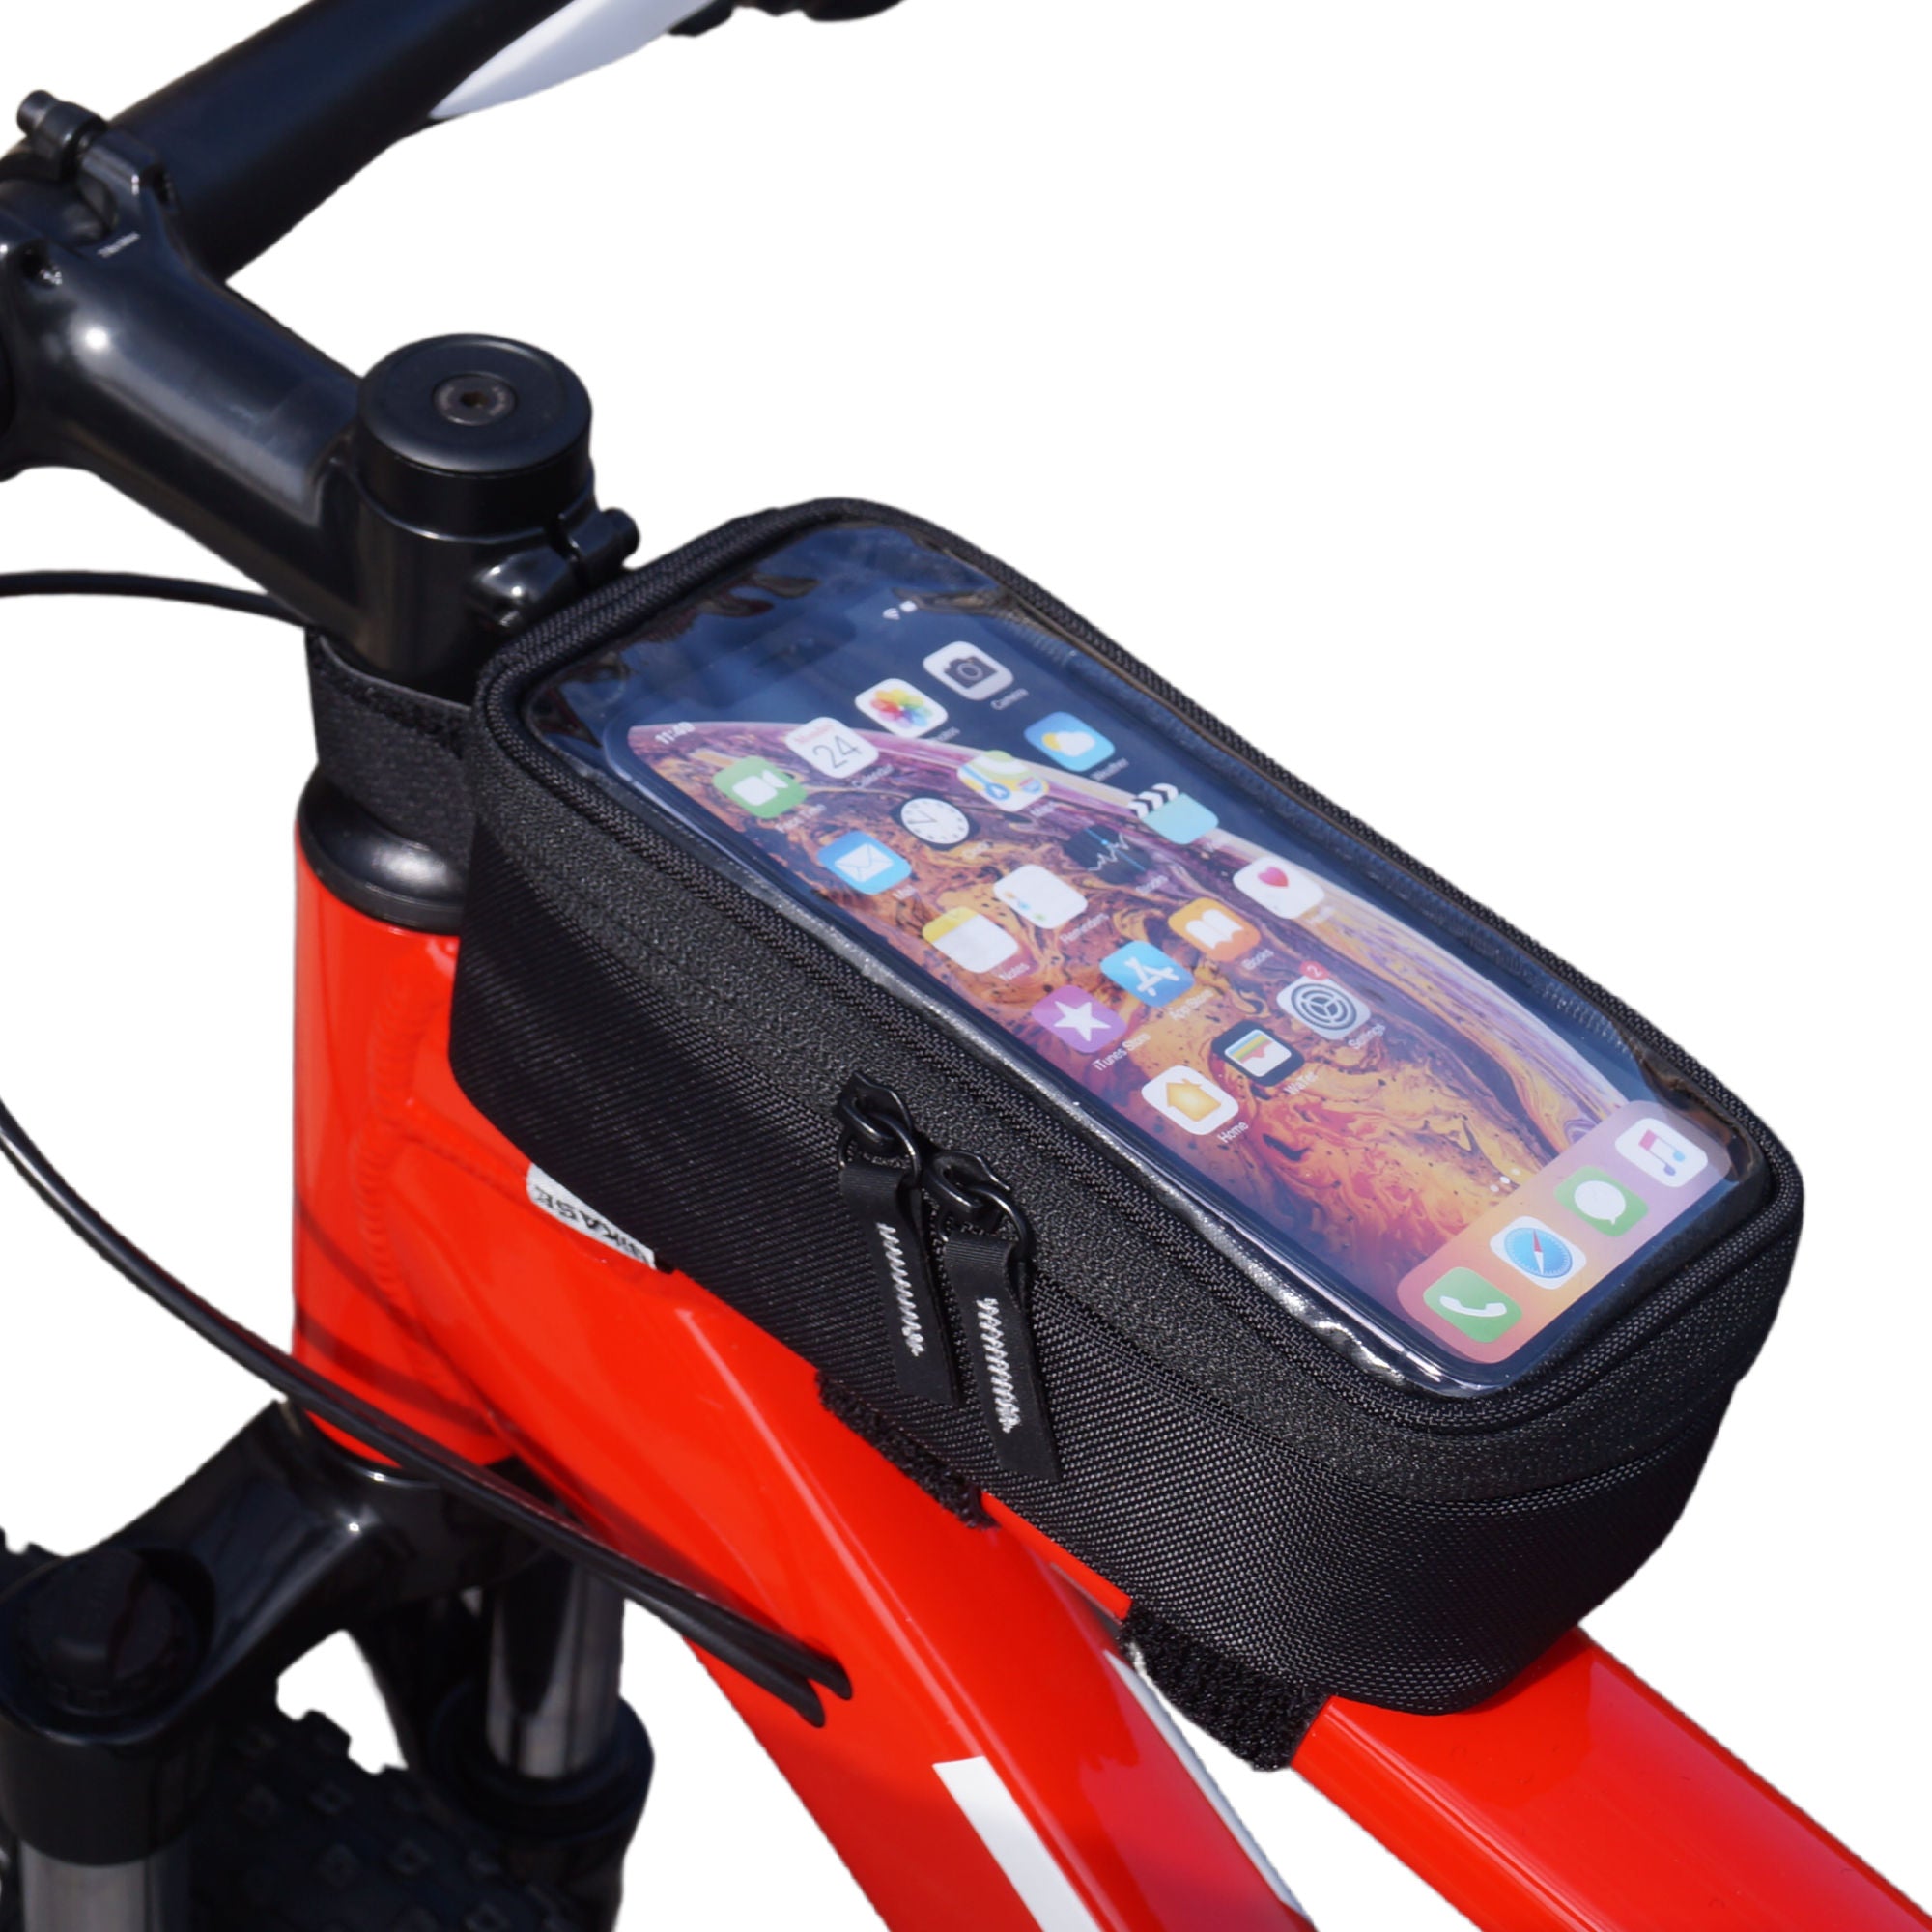 Beetle X - Bike Phone Bag and Storage